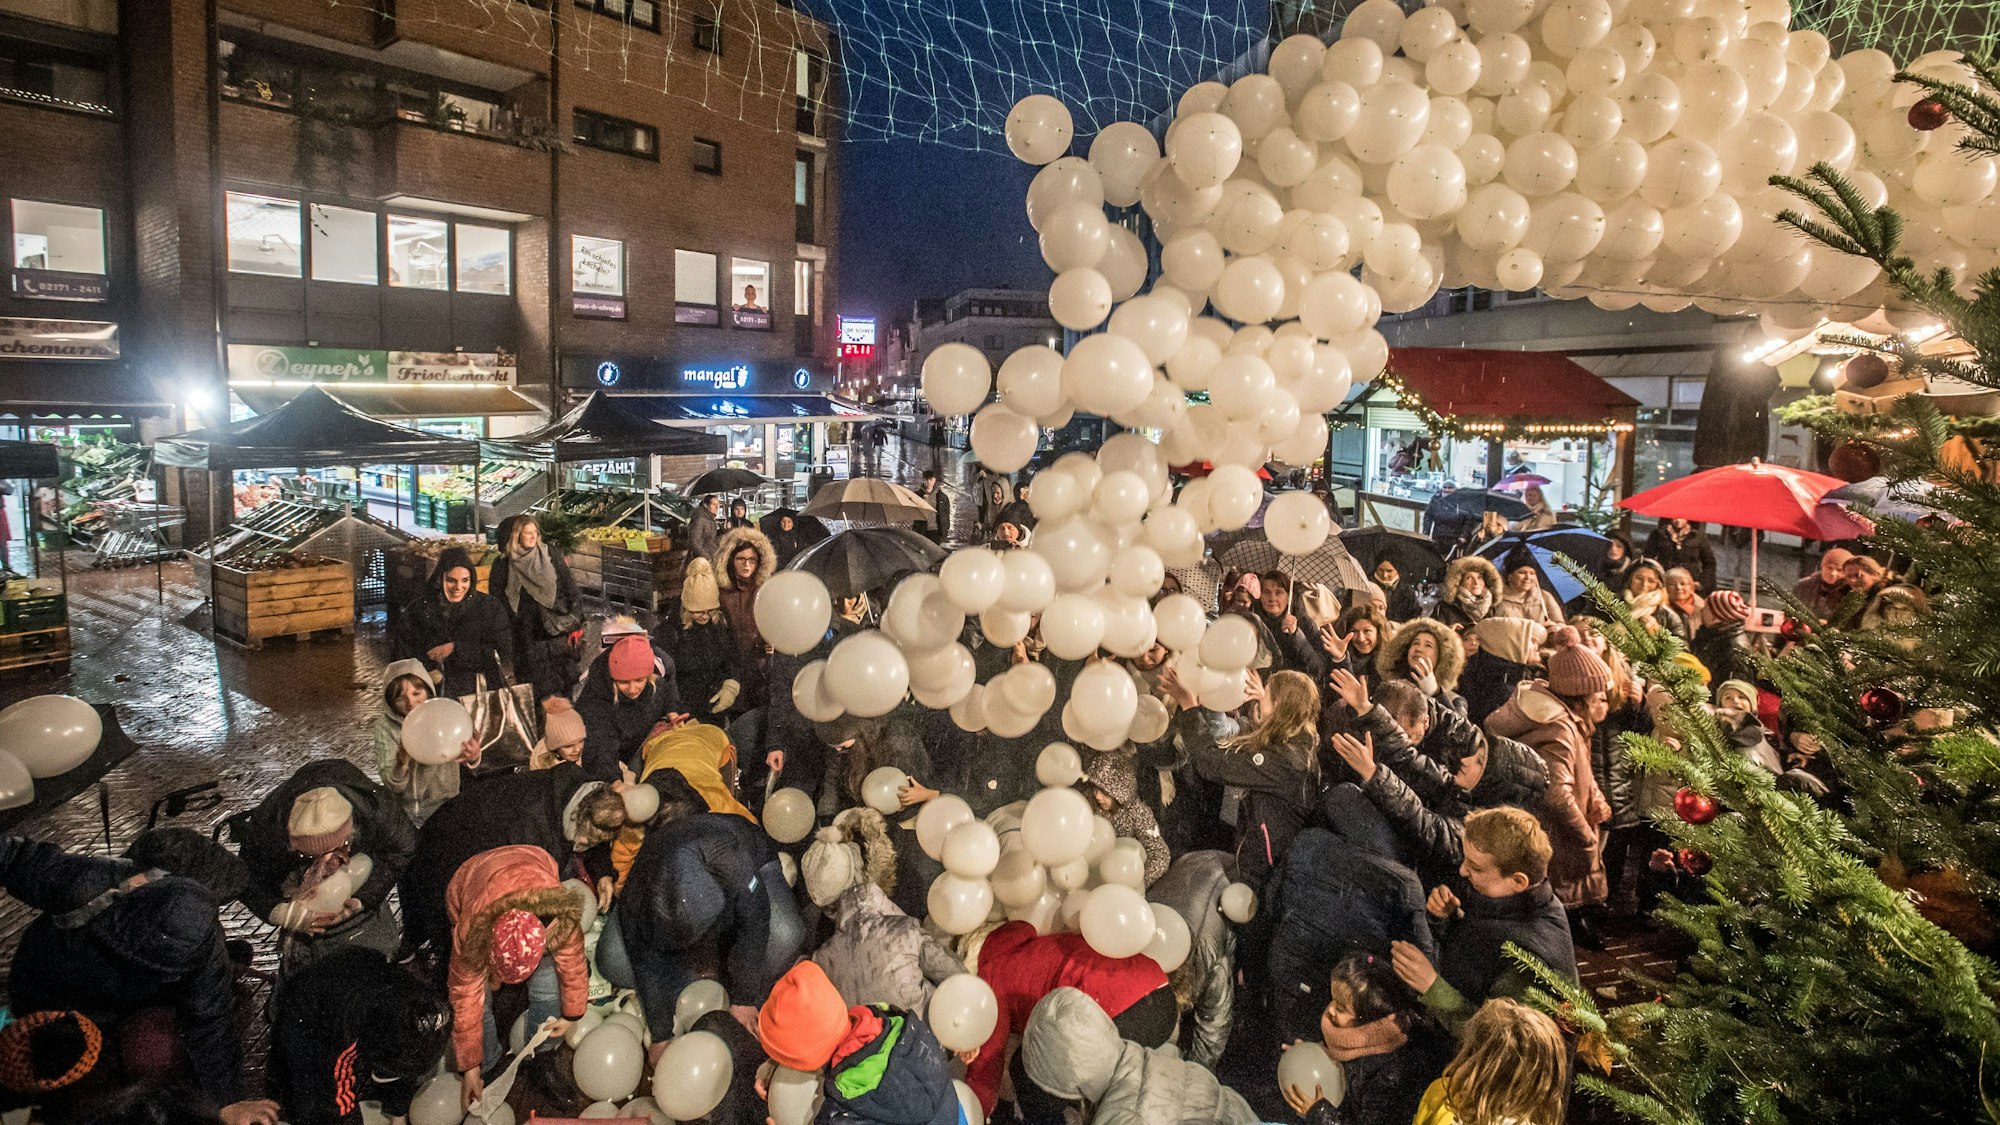 Tausend weiße Luftballons schwebten herab, in manchen fand sich ein Gutschein.